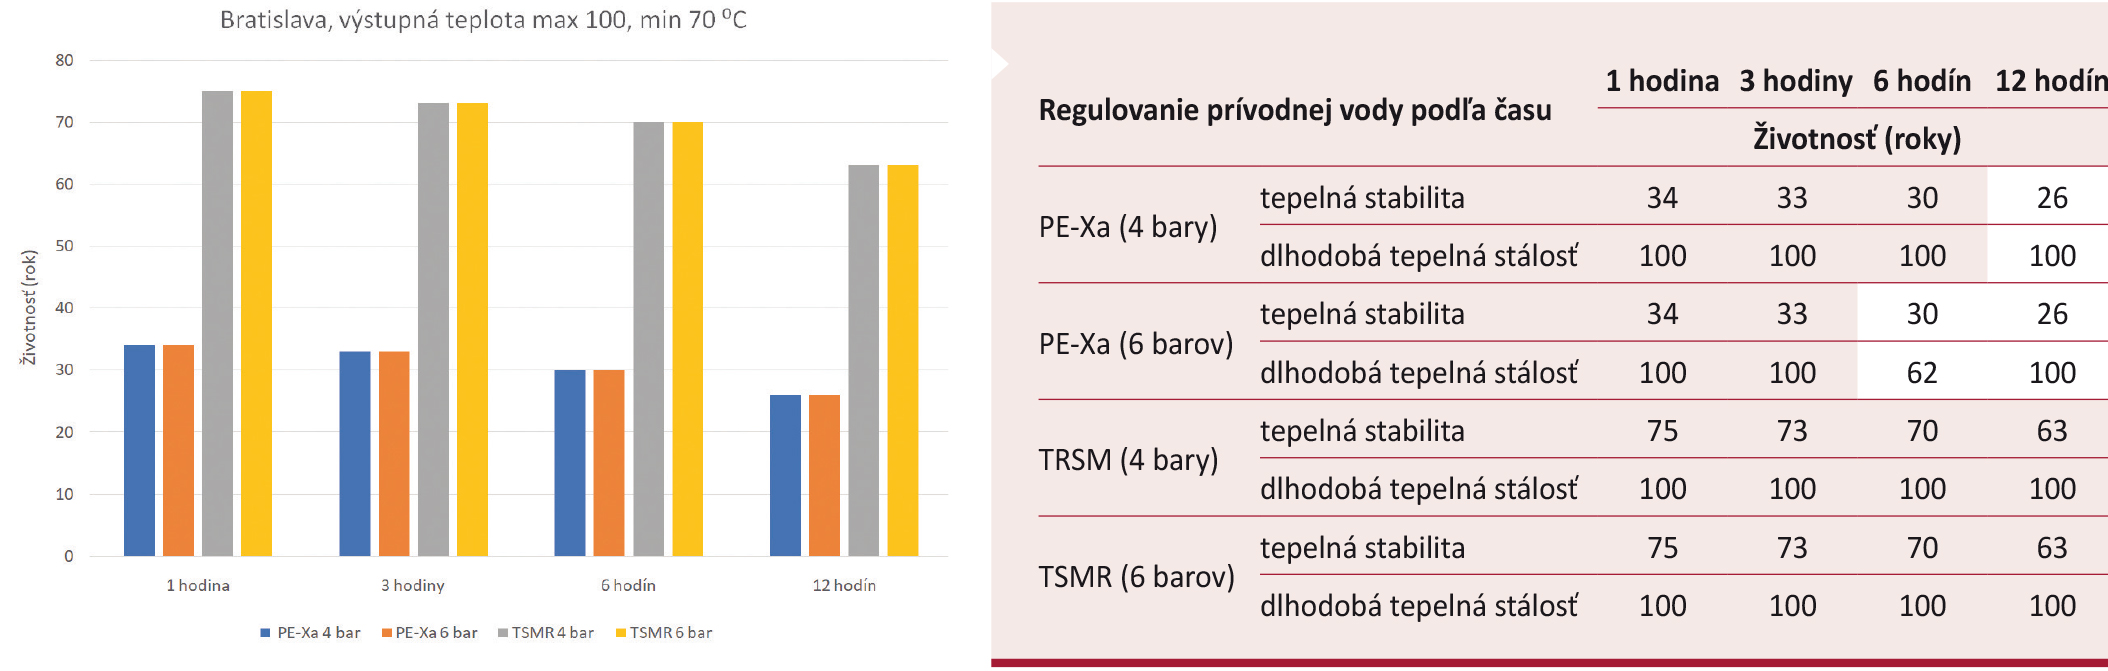 Obr. 4 Vyhodnotenie životnosti potrubí reprezentatívnej krivky s výstupnou teplonosnou látkou max. 100 °C, min. 70 °C pre najchladnejší rok 2006 v Bratislave s reguláciou teploty prívodnej vody po 1, 3, 6 a 12 hodinách podľa vonkajšej teploty vzduchu; TSMR – termoplasticky zosilnená médionosná rúrka s aramidovým vláknom